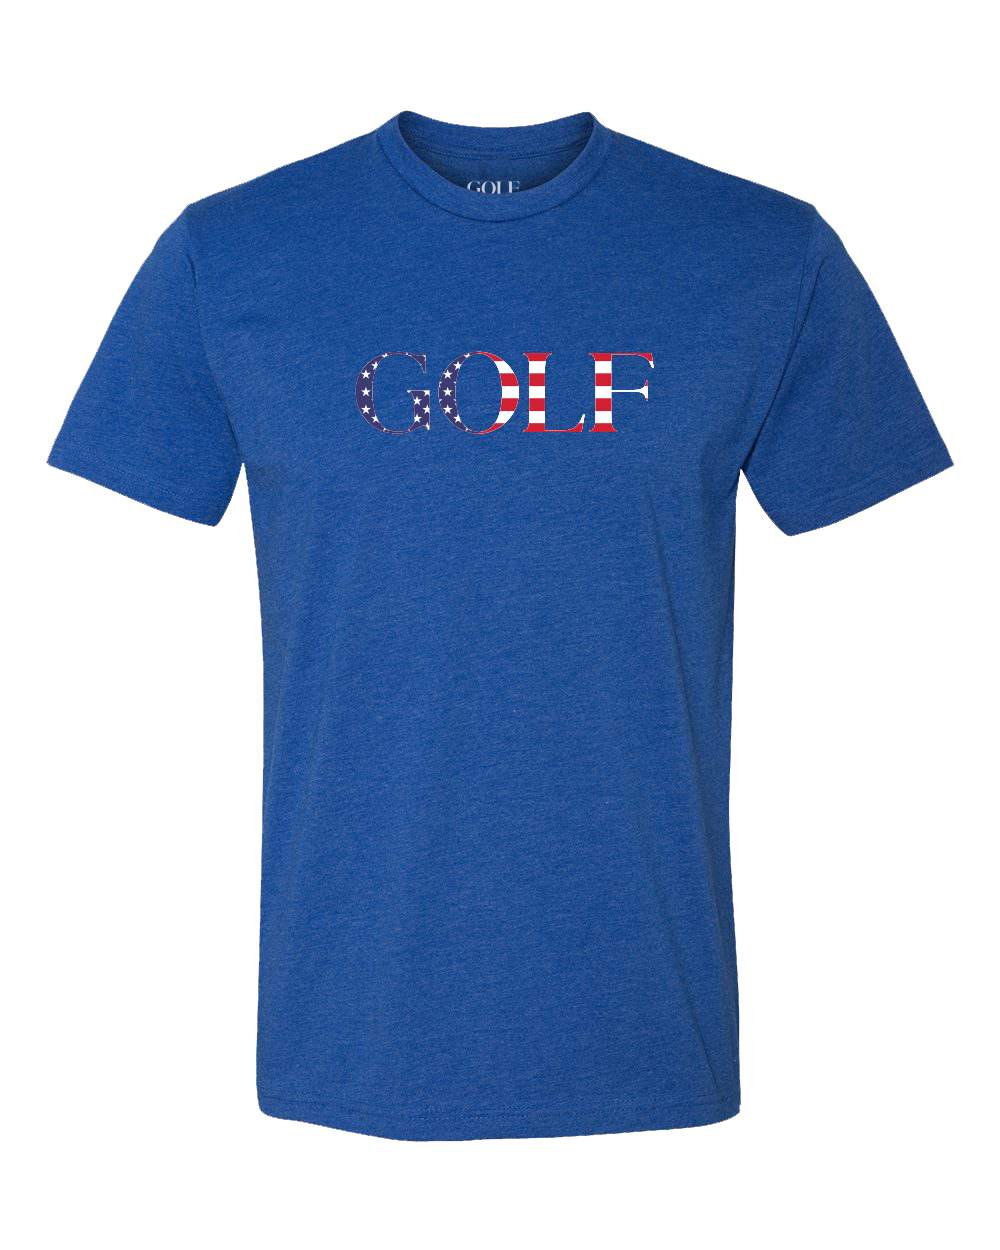 Team USA GOLF T-Shirt - GOLF.com